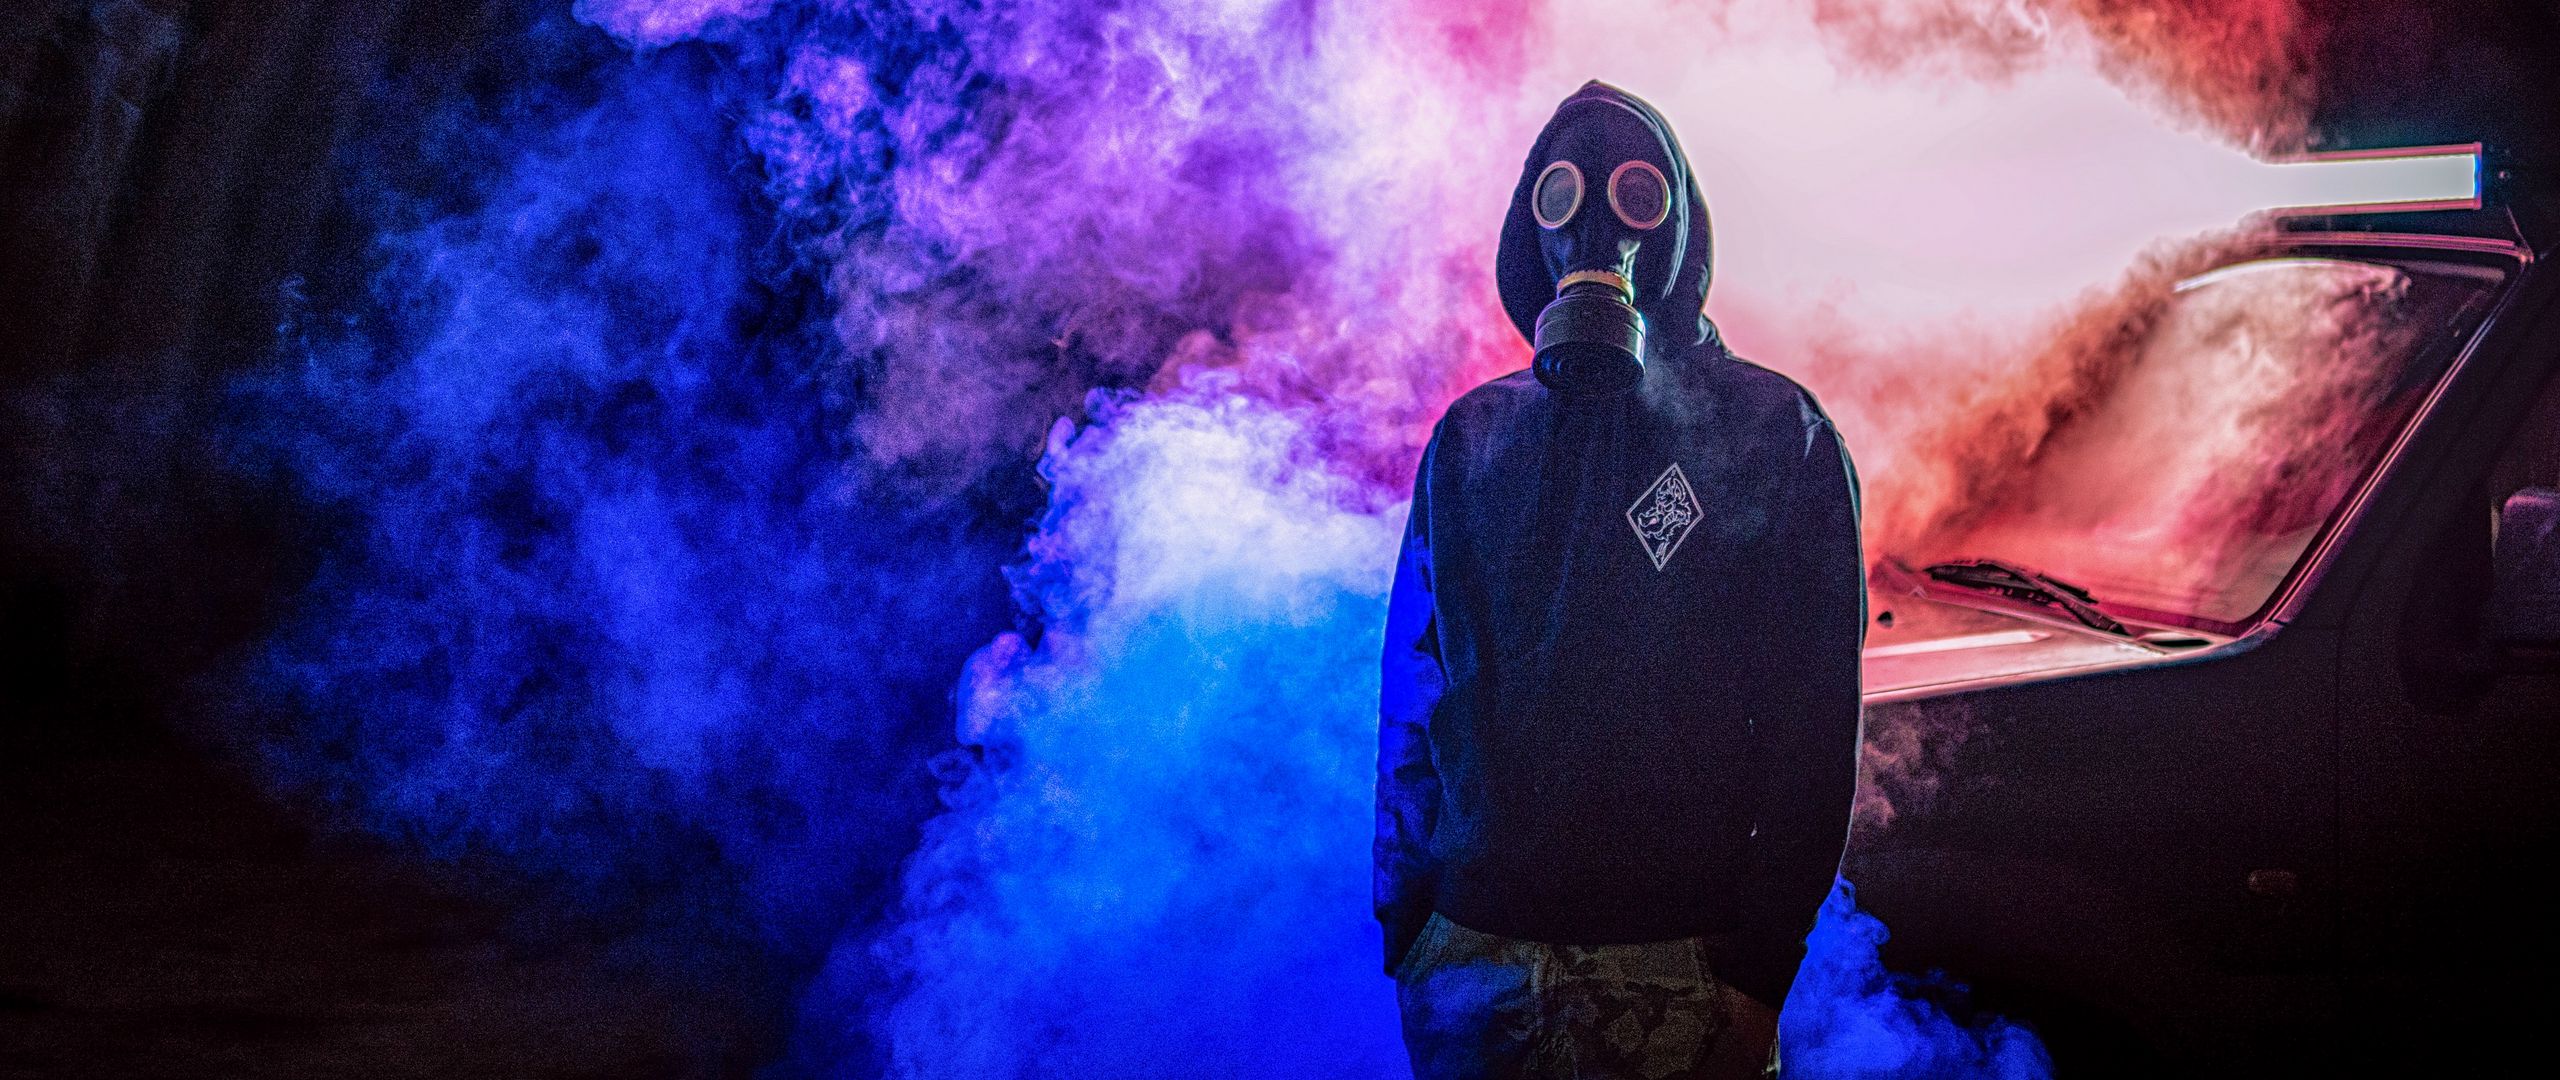 2560x1080 Wallpaper gas mask, man, smoke, colorful